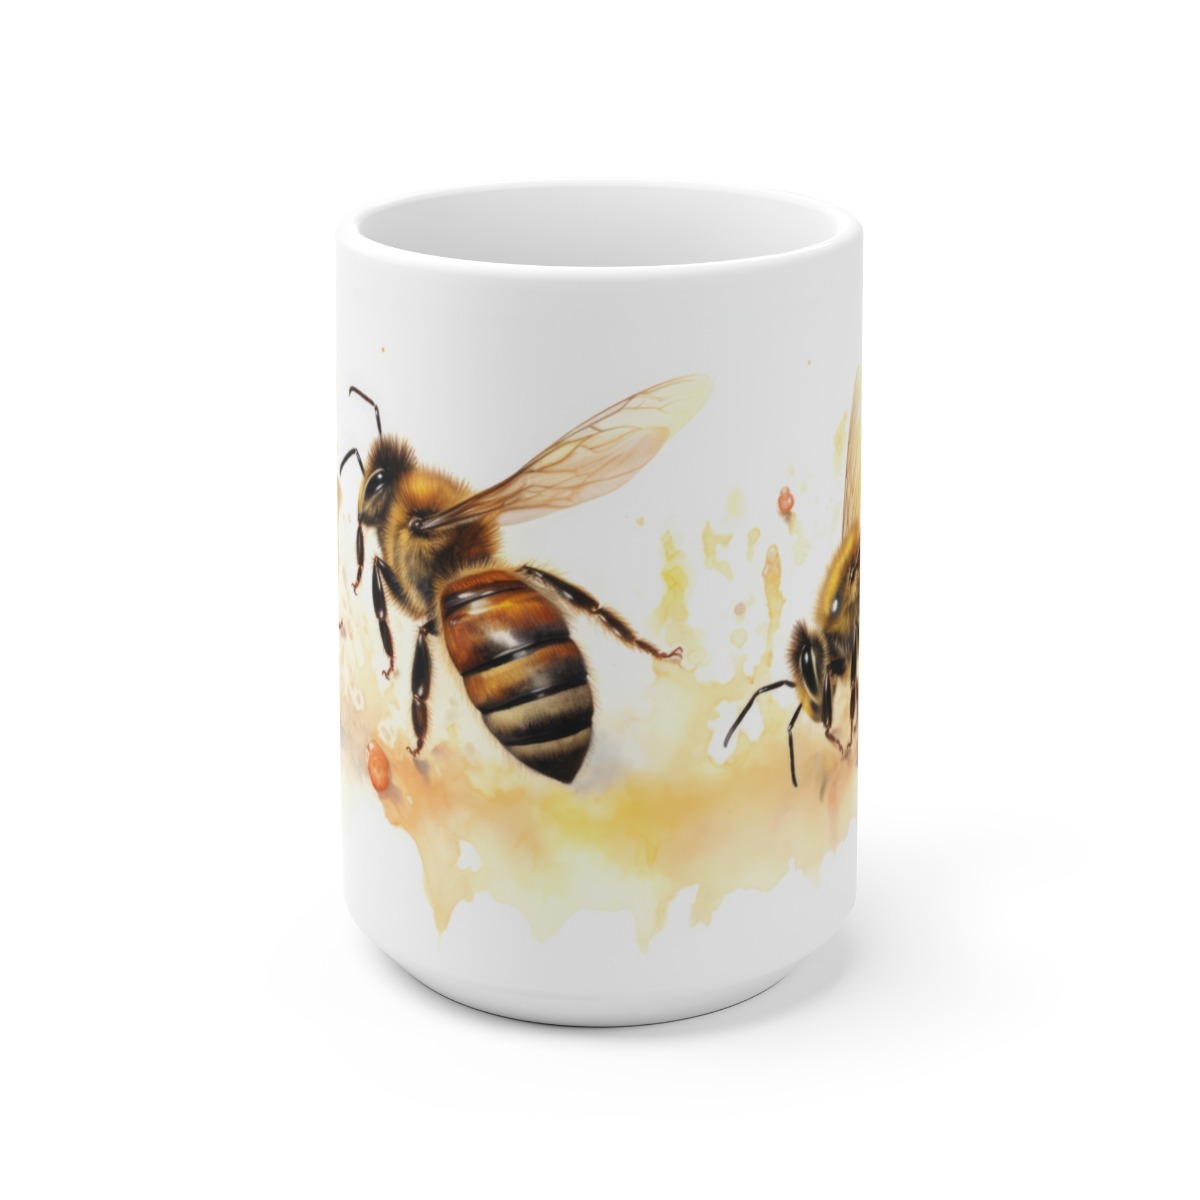 Weiße Keramiktasse mit Bienenmotiv in Wasserfarben